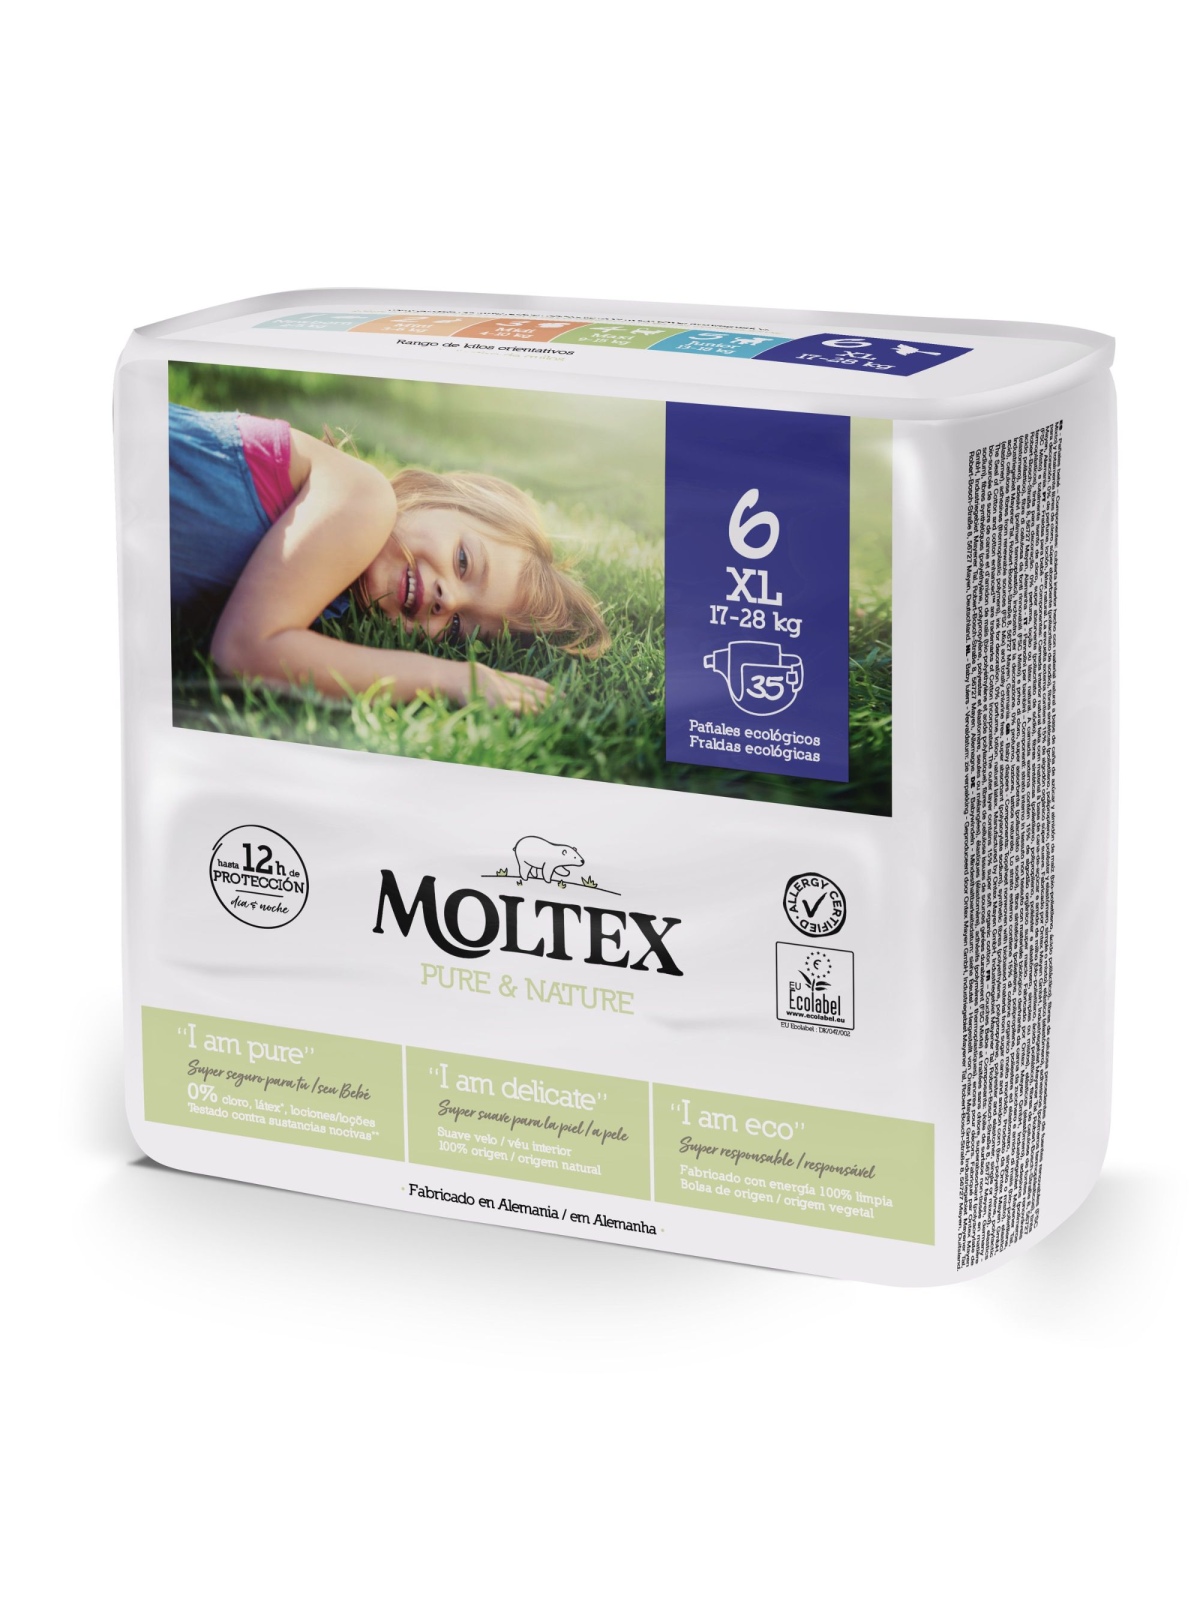 Moltex Pure Nature Pañales infantiles ecológicos Talla 6